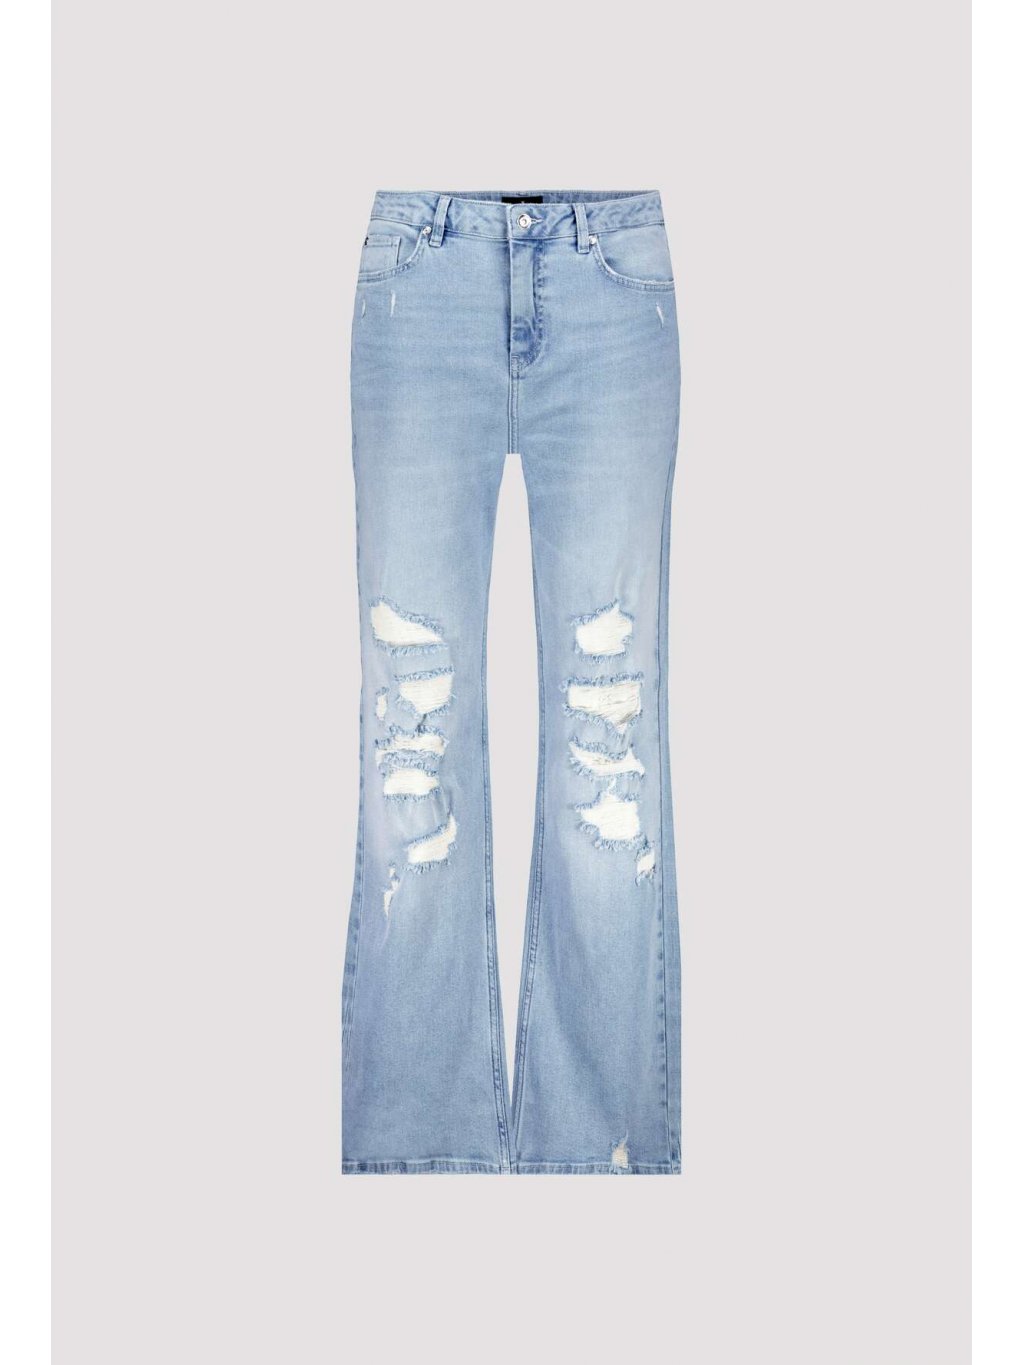 Kalhoty Monari 8371 široké světlé modré džíny s efekty  